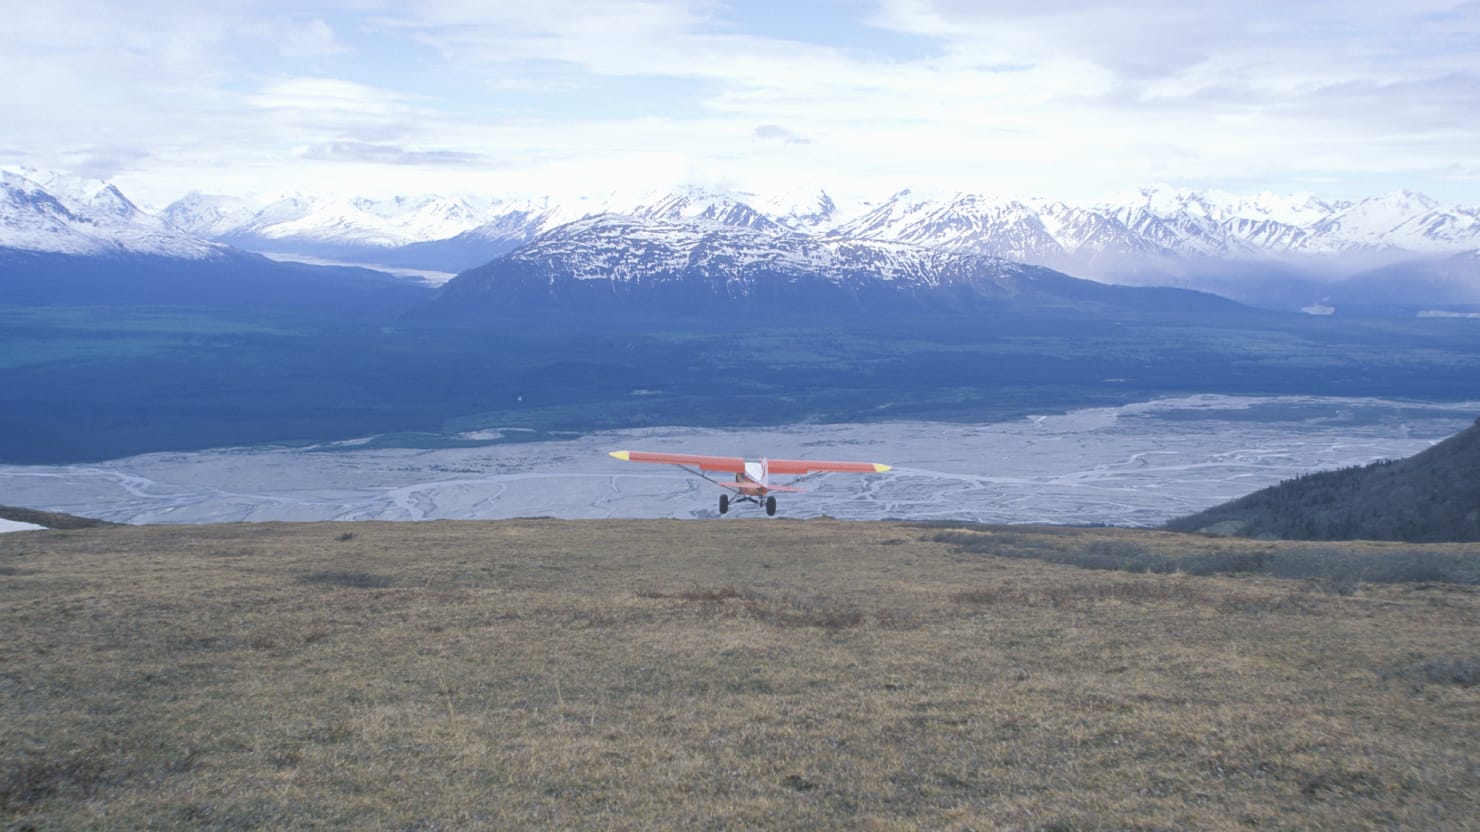 Pilot ‘Flying Wild Alaska’ Jim Tuito mendapat penghargaan Hari Ayah setelah kematiannya dalam kecelakaan pesawat